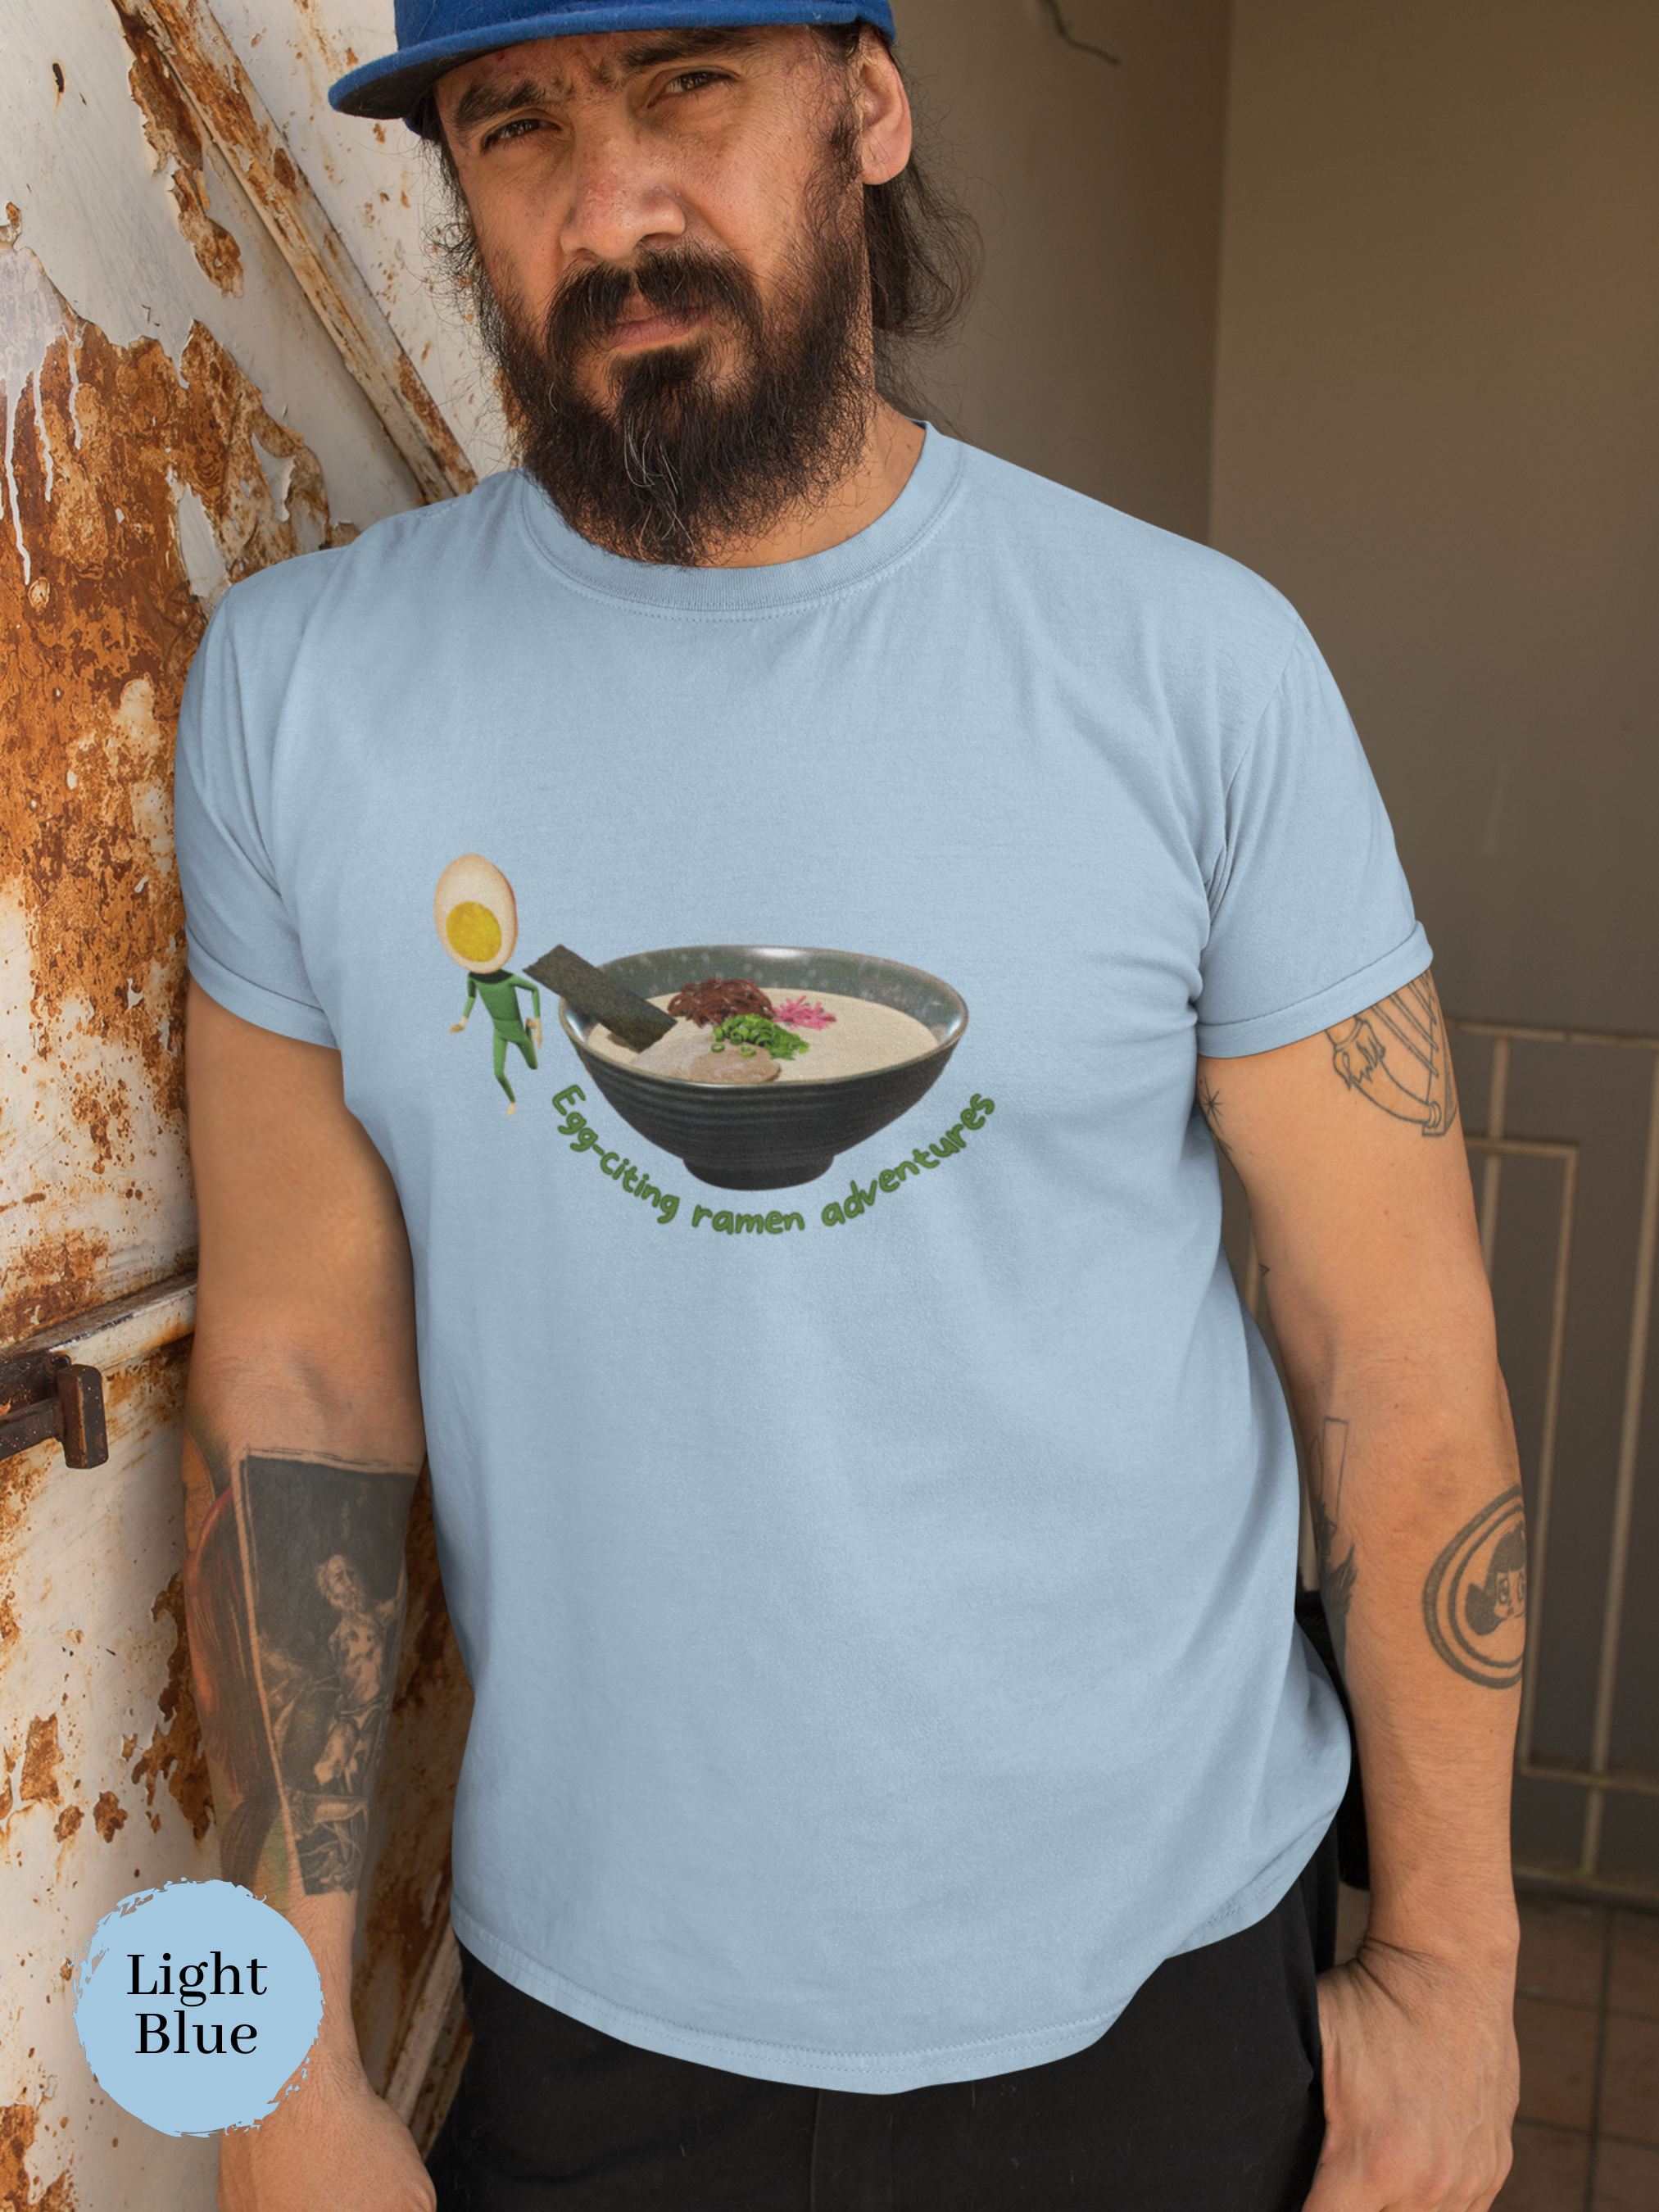 Ramen T-shirt: Egg-citing Ramen Adventures | Japanese Foodie Shirt with Ramen Art